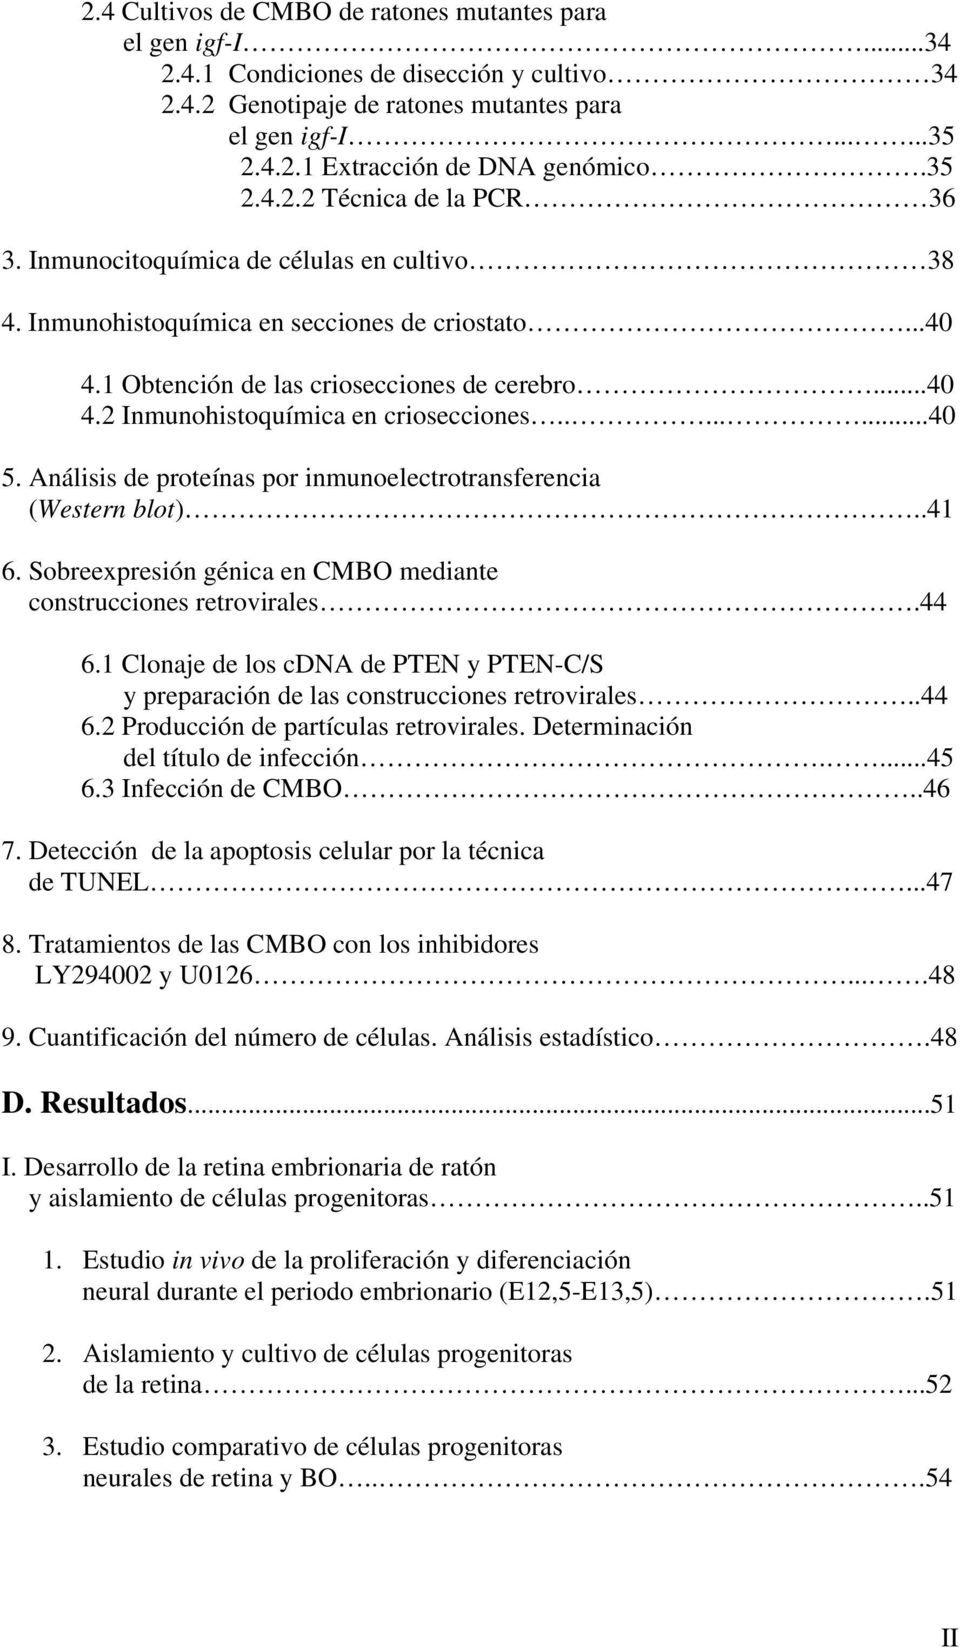 .......40 5. Análisis de proteínas por inmunoelectrotransferencia (Western blot)..41 6. Sobreexpresión génica en CMBO mediante construcciones retrovirales.44 6.